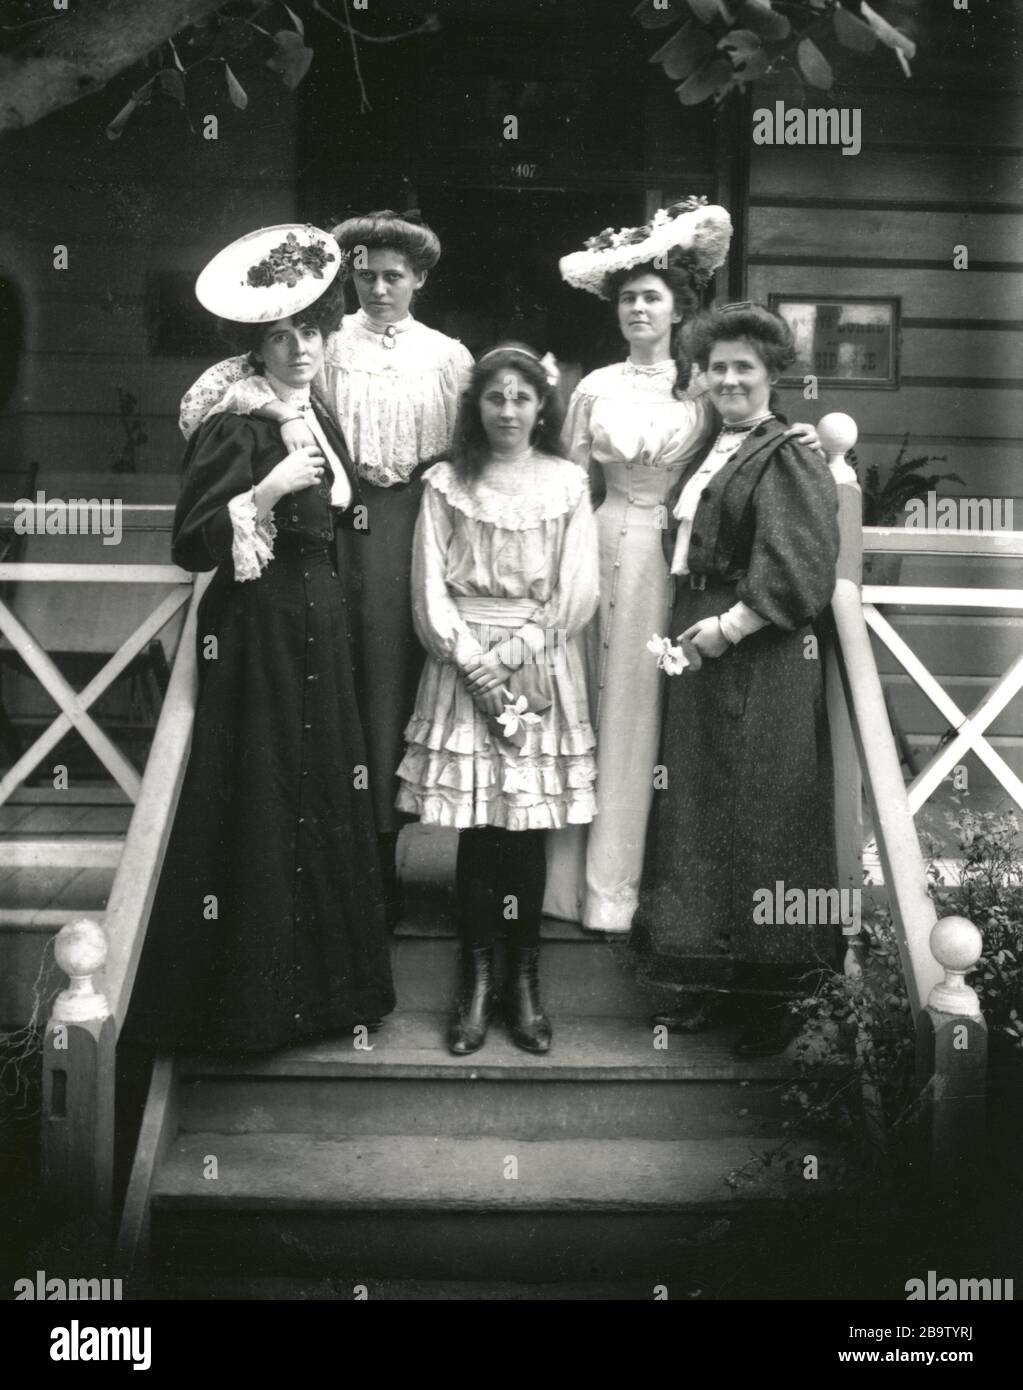 English: Ladies of the Day Large cappelli e abiti lunghi sono stati tutti  la moda per le donne nel 1900. Le caviglie sono state raramente osservate.  Durante la guerra i limiti sui